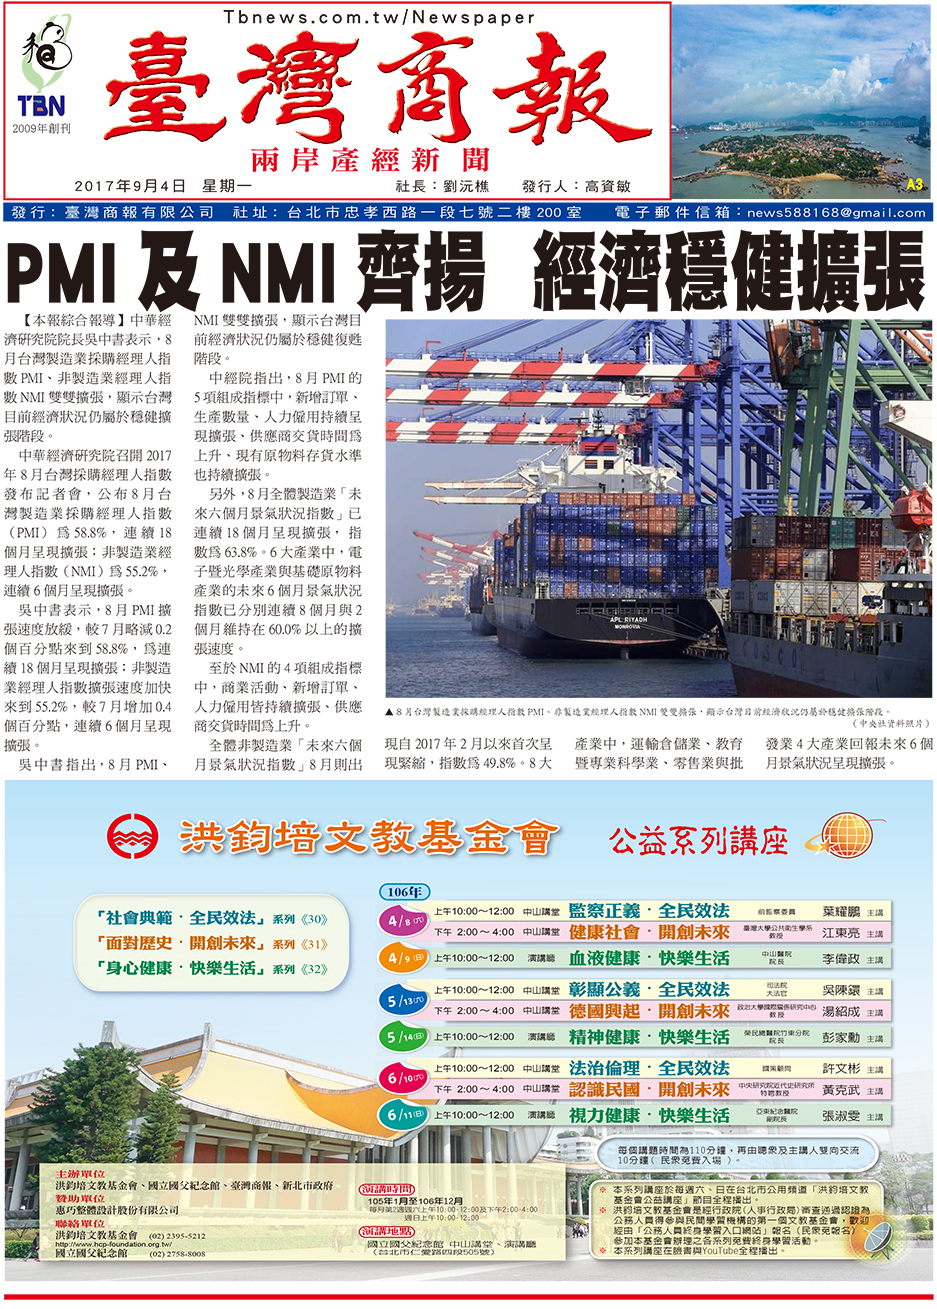 PMI 及 NMI 齊揚 經濟穩健擴張